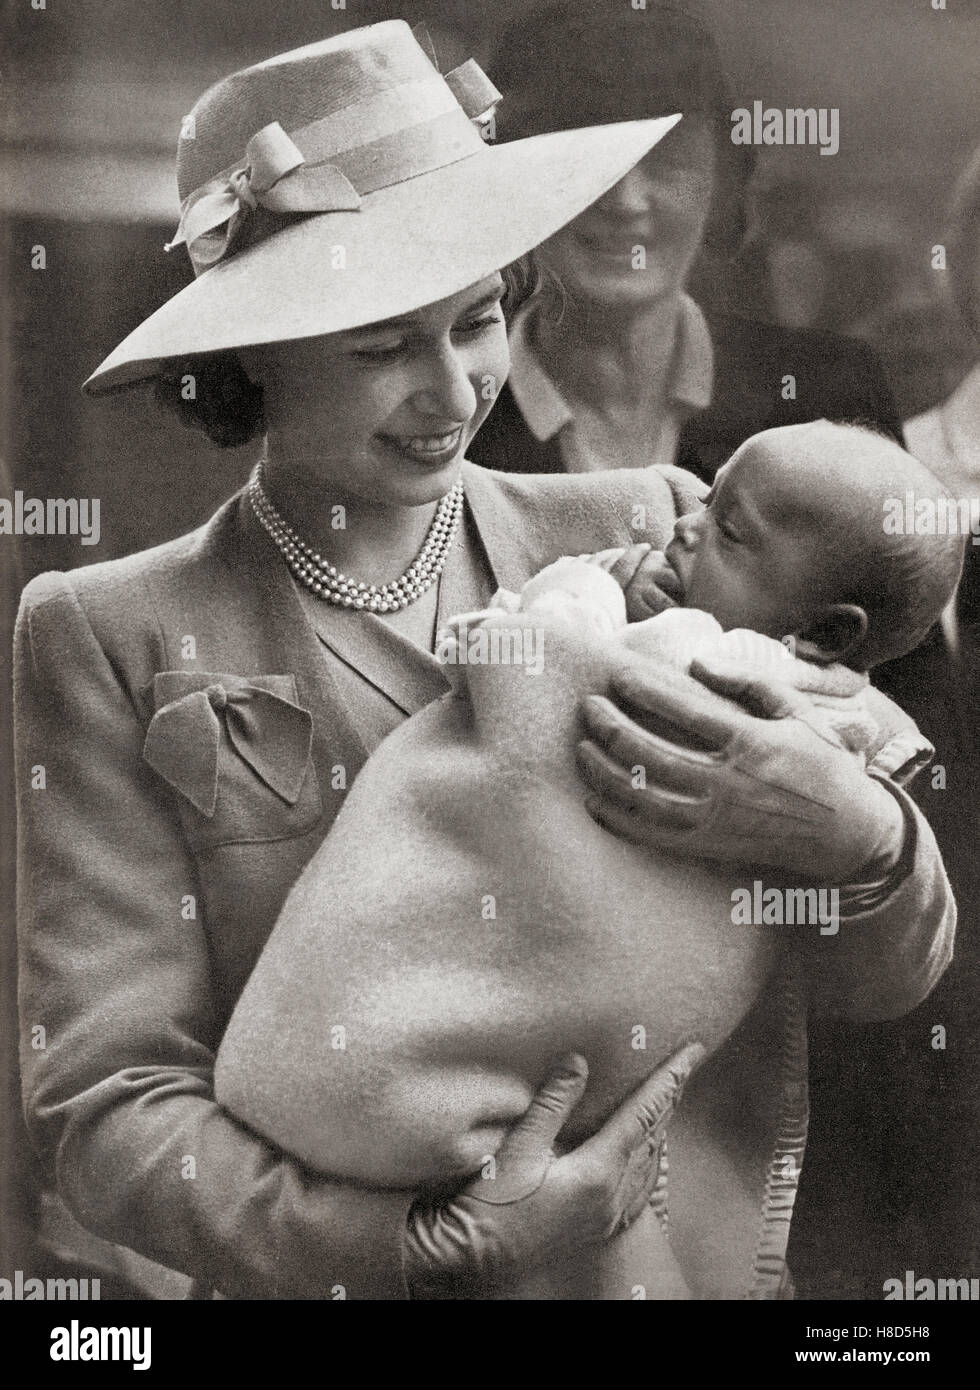 Prinzessin Elisabeth, zukünftige Elisabeth II., 1926 - 2022. Königin des Vereinigten Königreichs, Kanada, Australien und Neuseeland. Gesehen hier bei einem Besuch der Heritage Craft Schools for Crippled Children, Chailey, Sussex, England, 27.. Juni 1945. Stockfoto